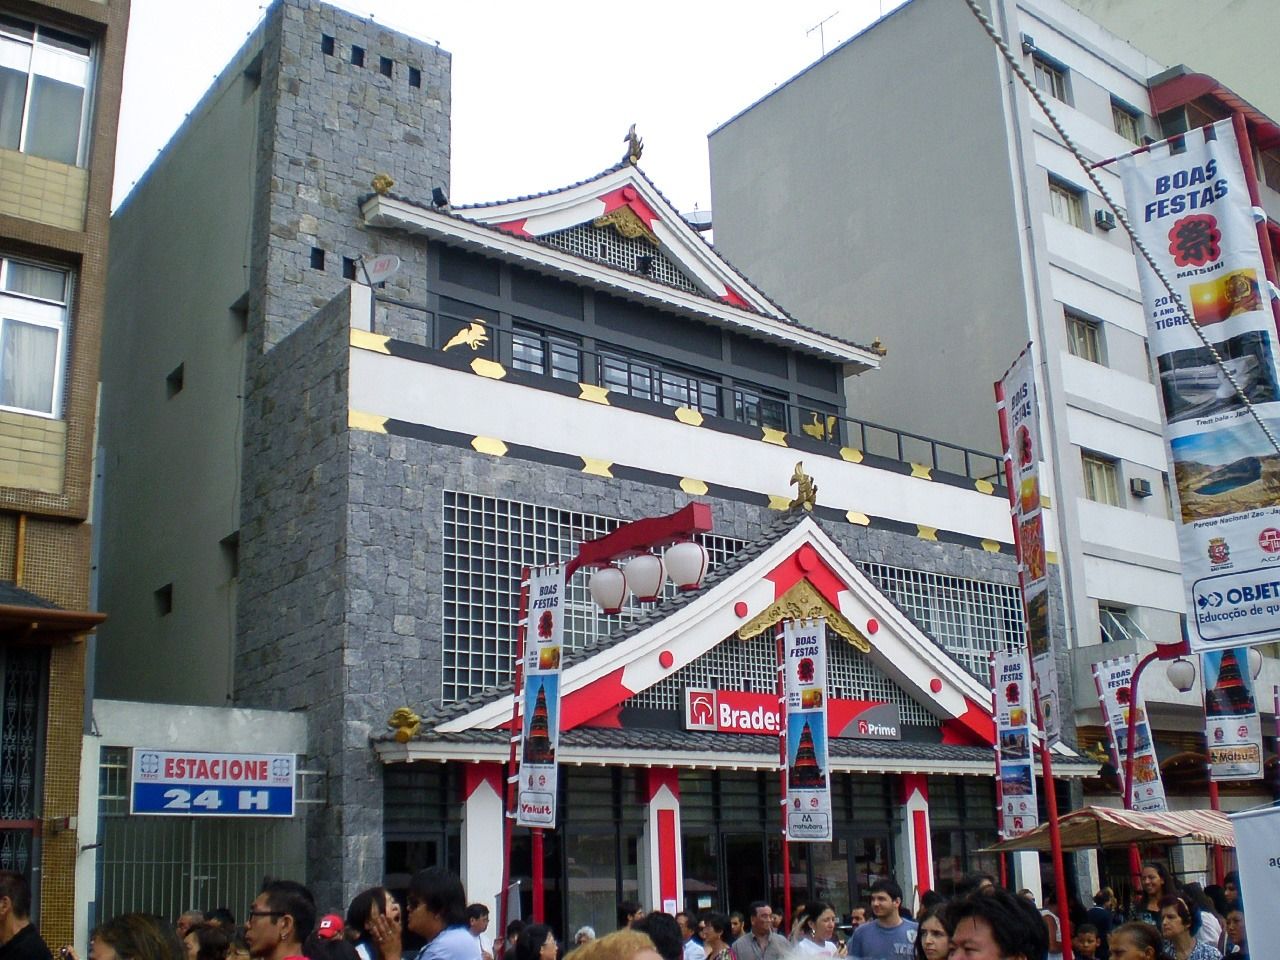 L’immeuble de la succursale de la banque Bradesco du quartier de la Liberdade a des allures de château japonais.